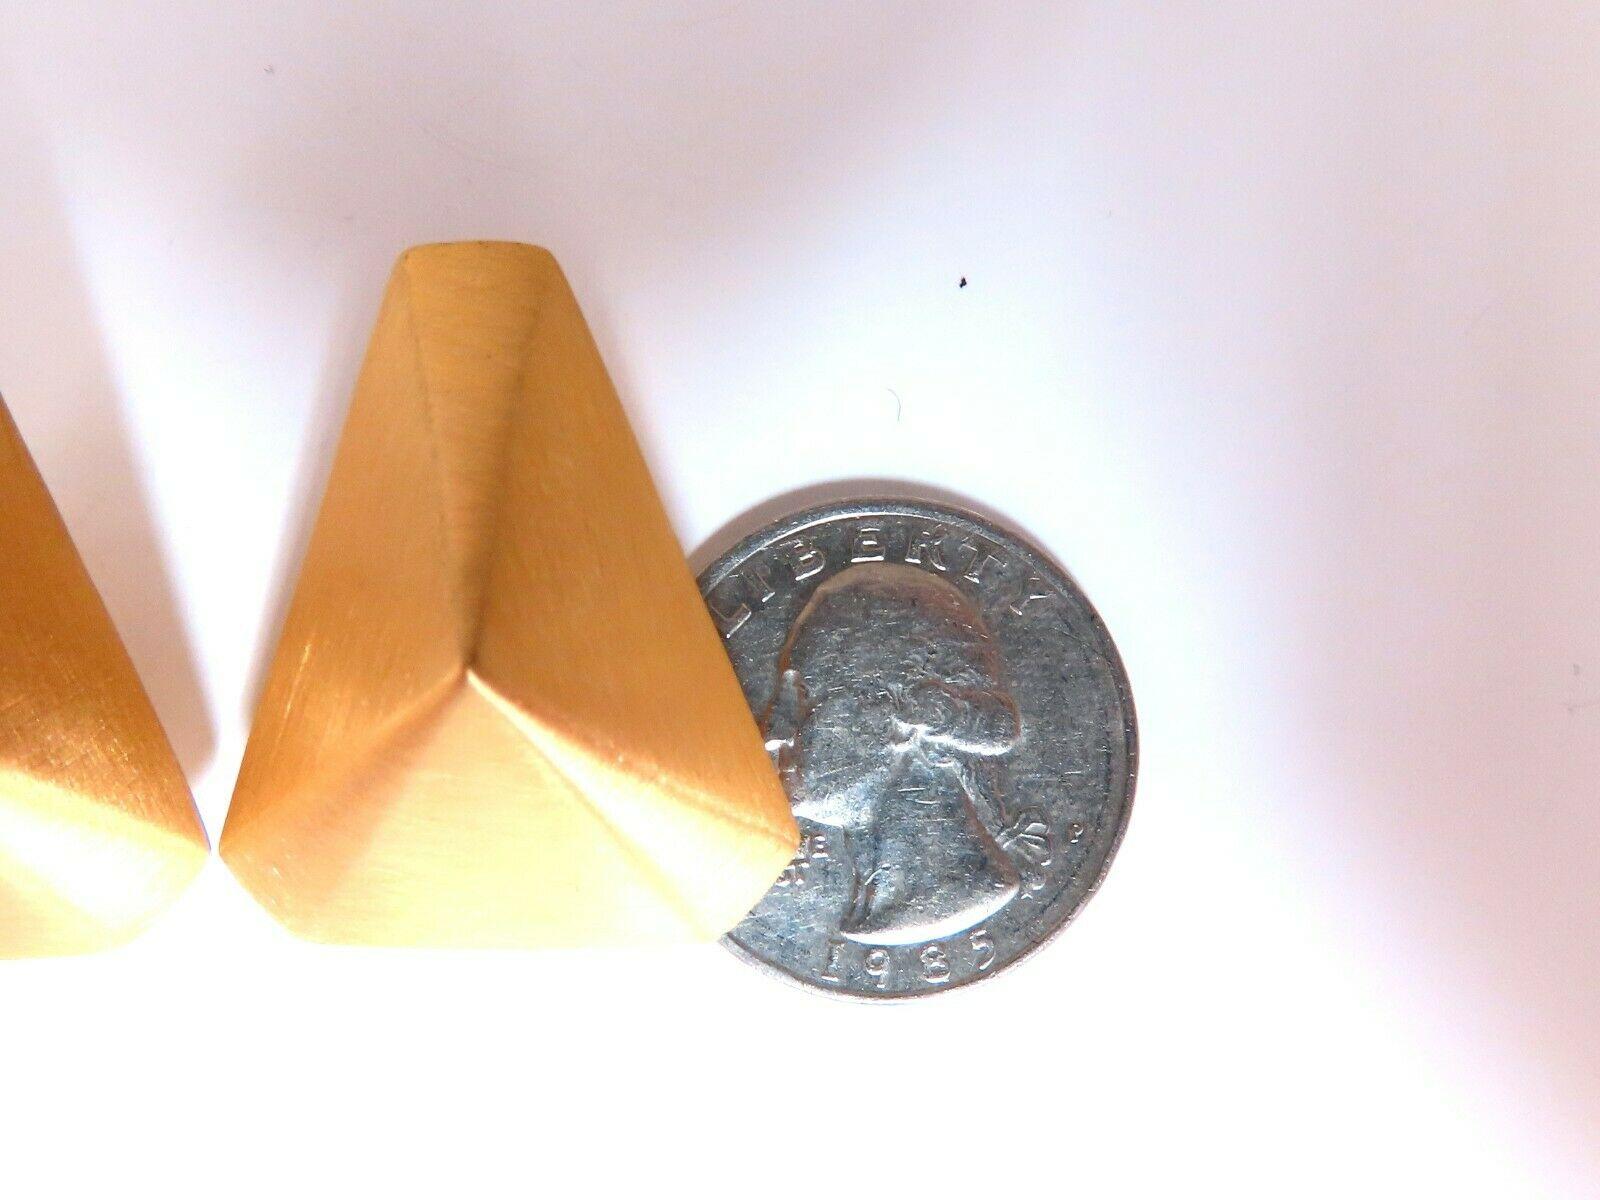 Boucles d'oreilles clip en forme de pyramide en métal brossé

Mesures des boucles d'oreilles :

1.1 x .91 Inch

Profondeur : 0,37 pouce

Clips oméga confortables

12.3 grammes / 14kt. Or jaune

Les boucles d'oreilles sont magnifiques